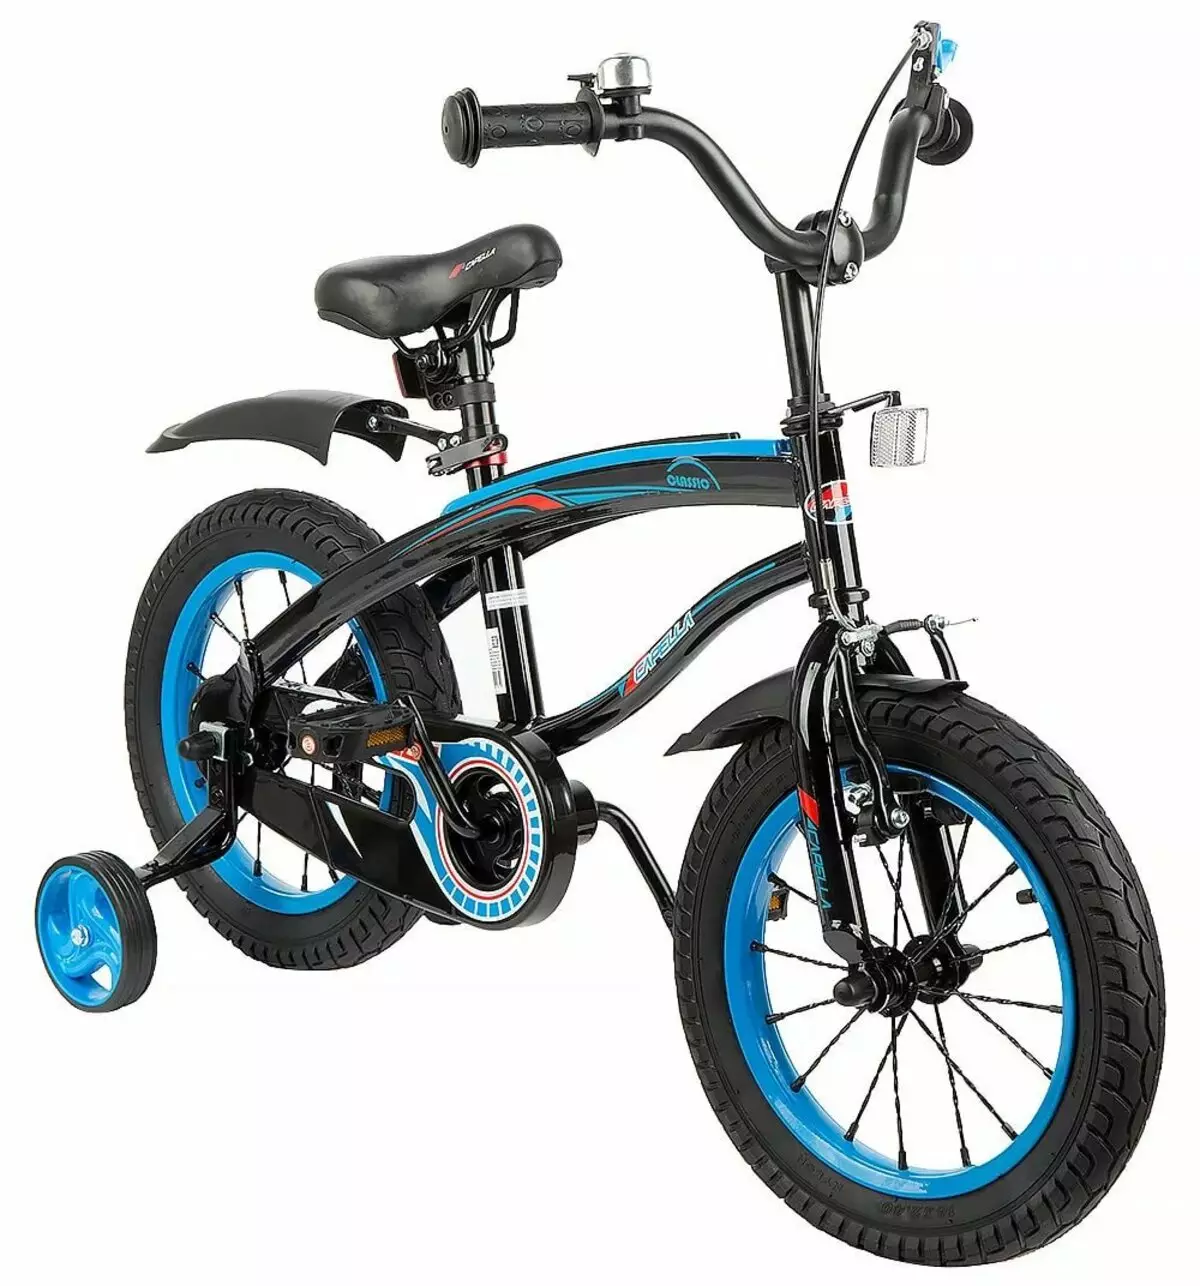 Купить велосипед для мальчика в москве